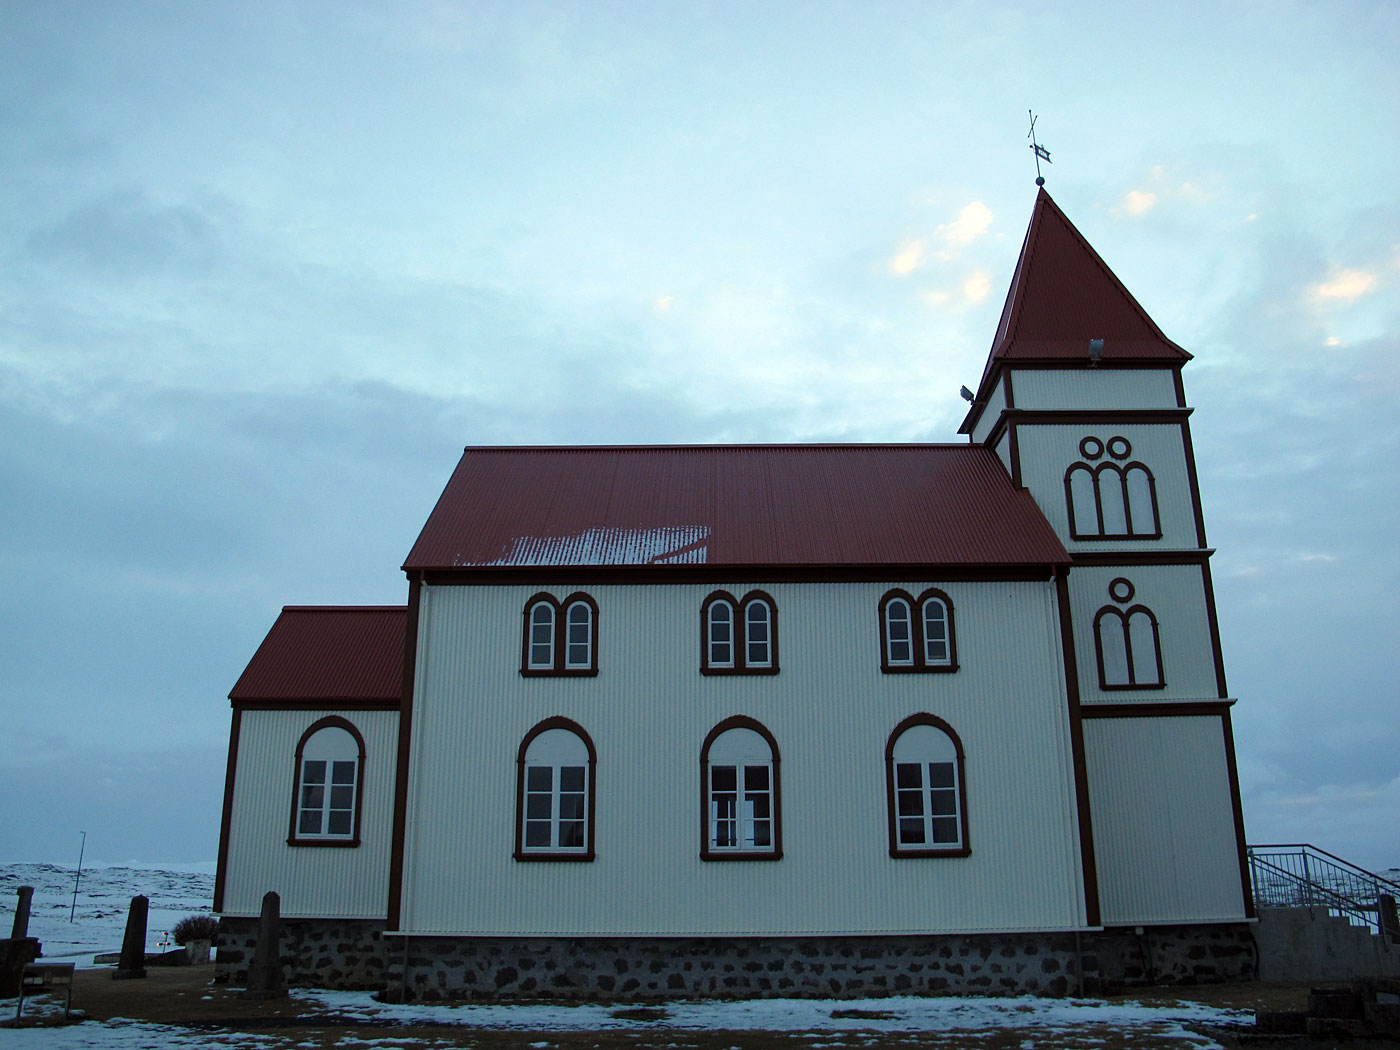 Miðnes. Short trip. - Kálftarneskirkja. I. (30 December 2012)